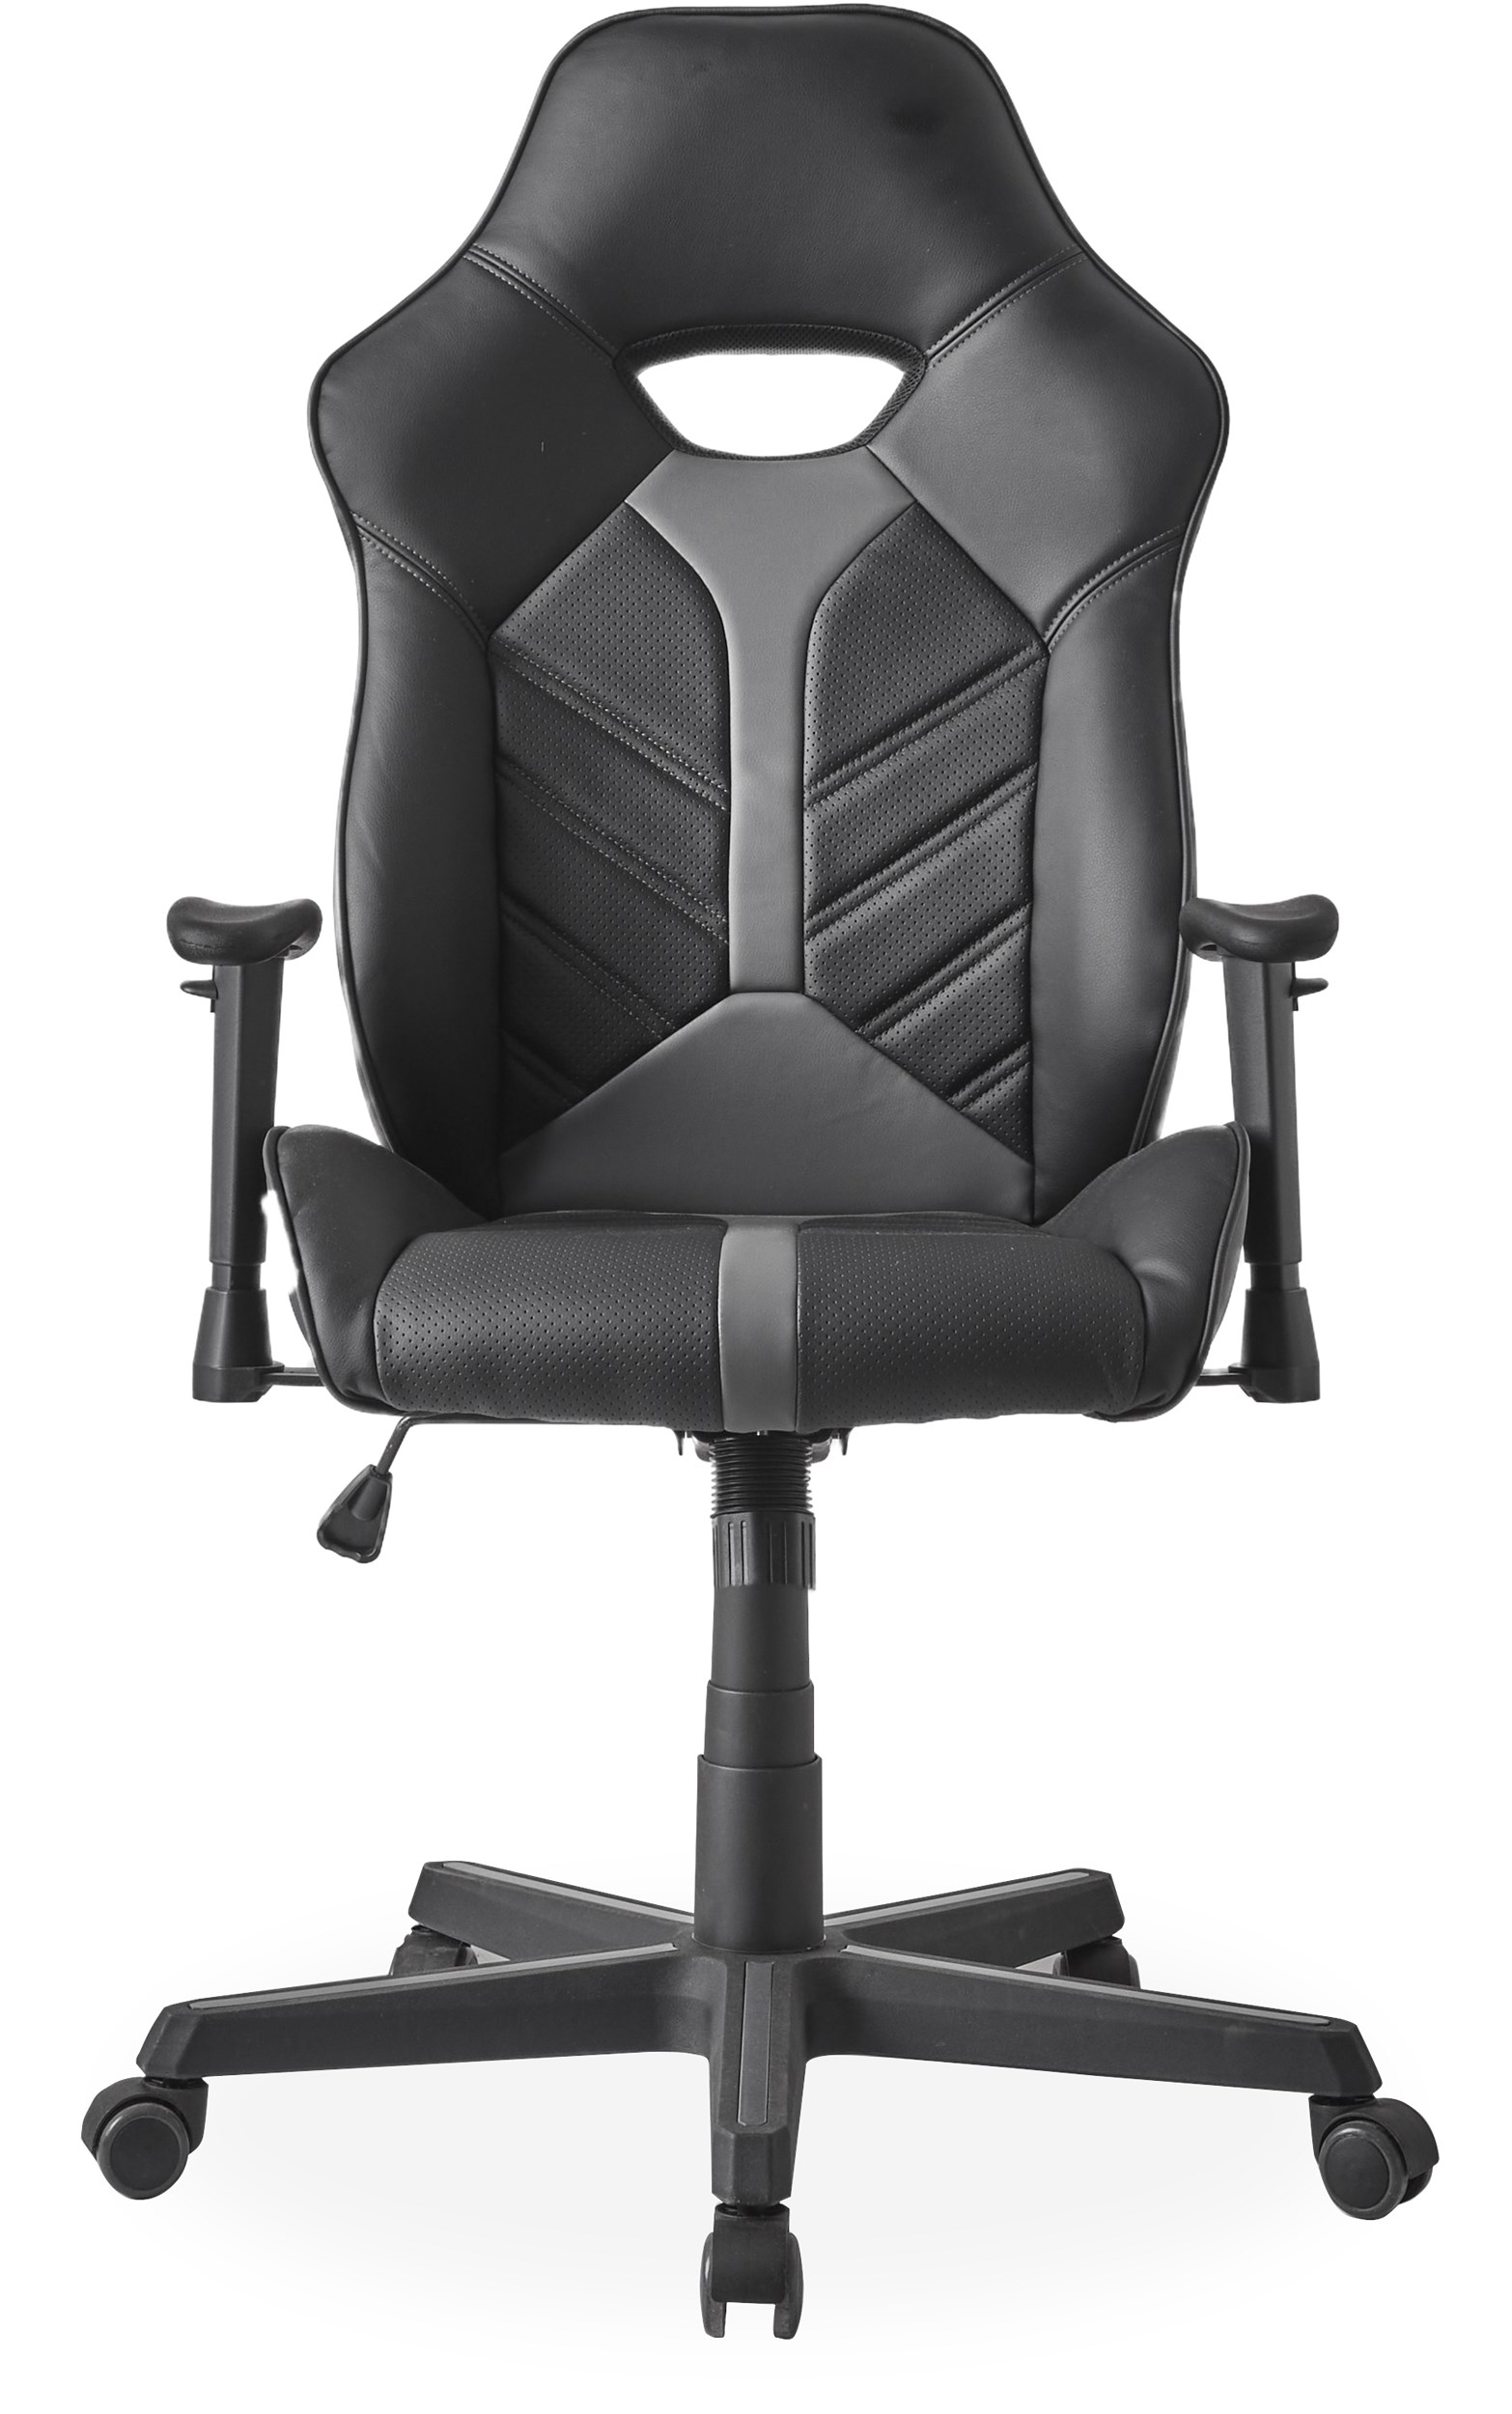 Strike spelstol - Sits i svart/grått konstläder och stomme i svart nylon med svart/grå